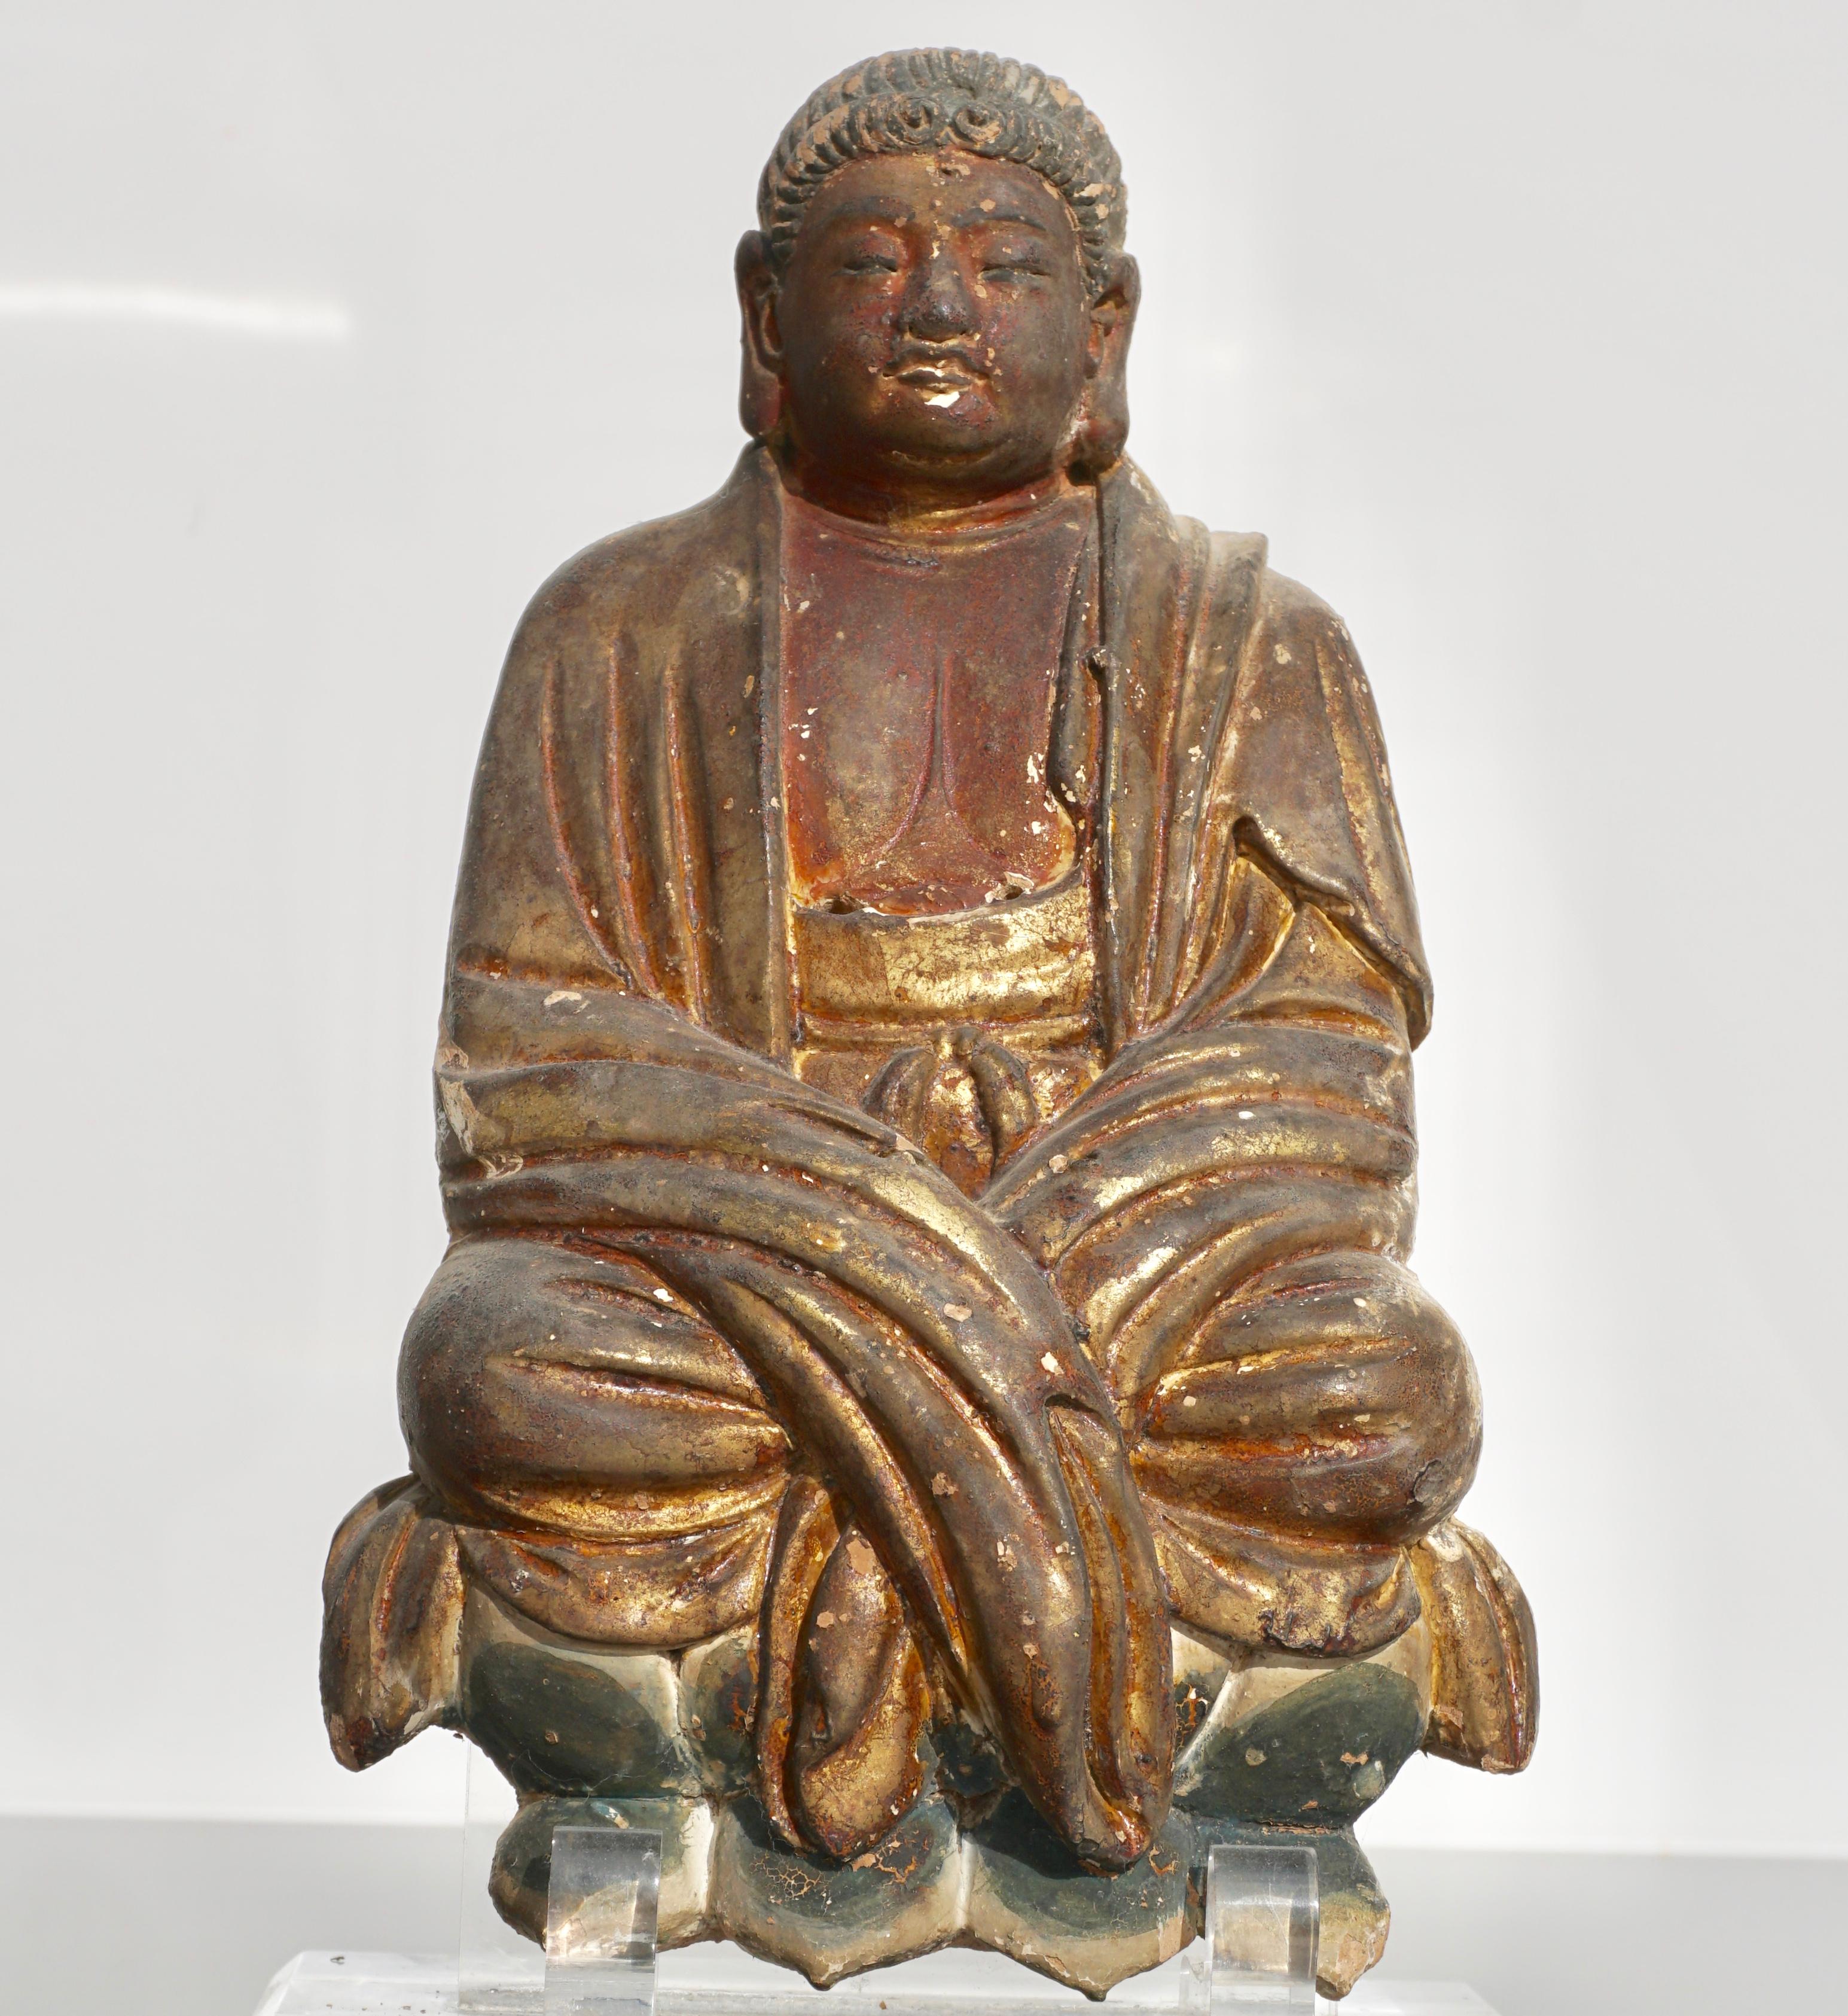 Très belle figure de Bouddha en terre cuite chinoise de la fin des Yuan au début des Ming, peinte en doré et en polychrome. Il est vêtu d'épaisses robes, ses cheveux sont arrangés dans le style typique du début des Song ou de la dynastie Yuan et il